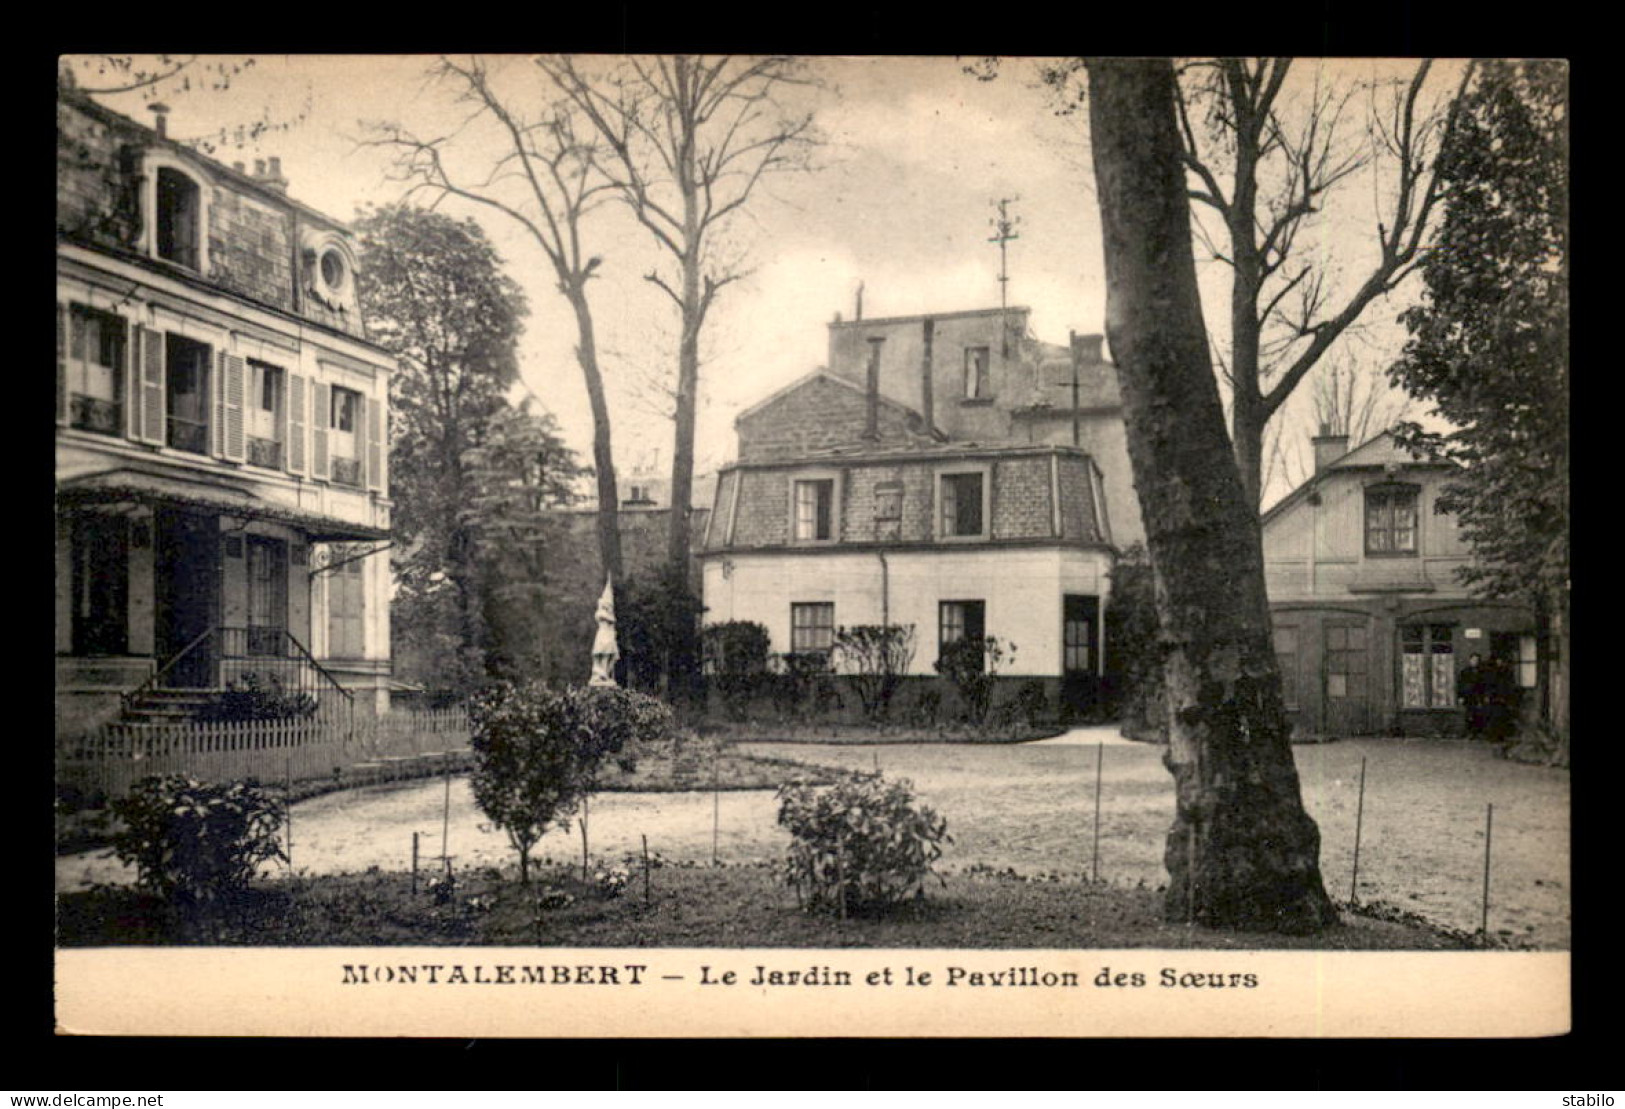 92 - COURBEVOIE - MONTALEMBERT EN 1925 - LE JARDIN ET LE PAVILLON DES SOEURS - Courbevoie